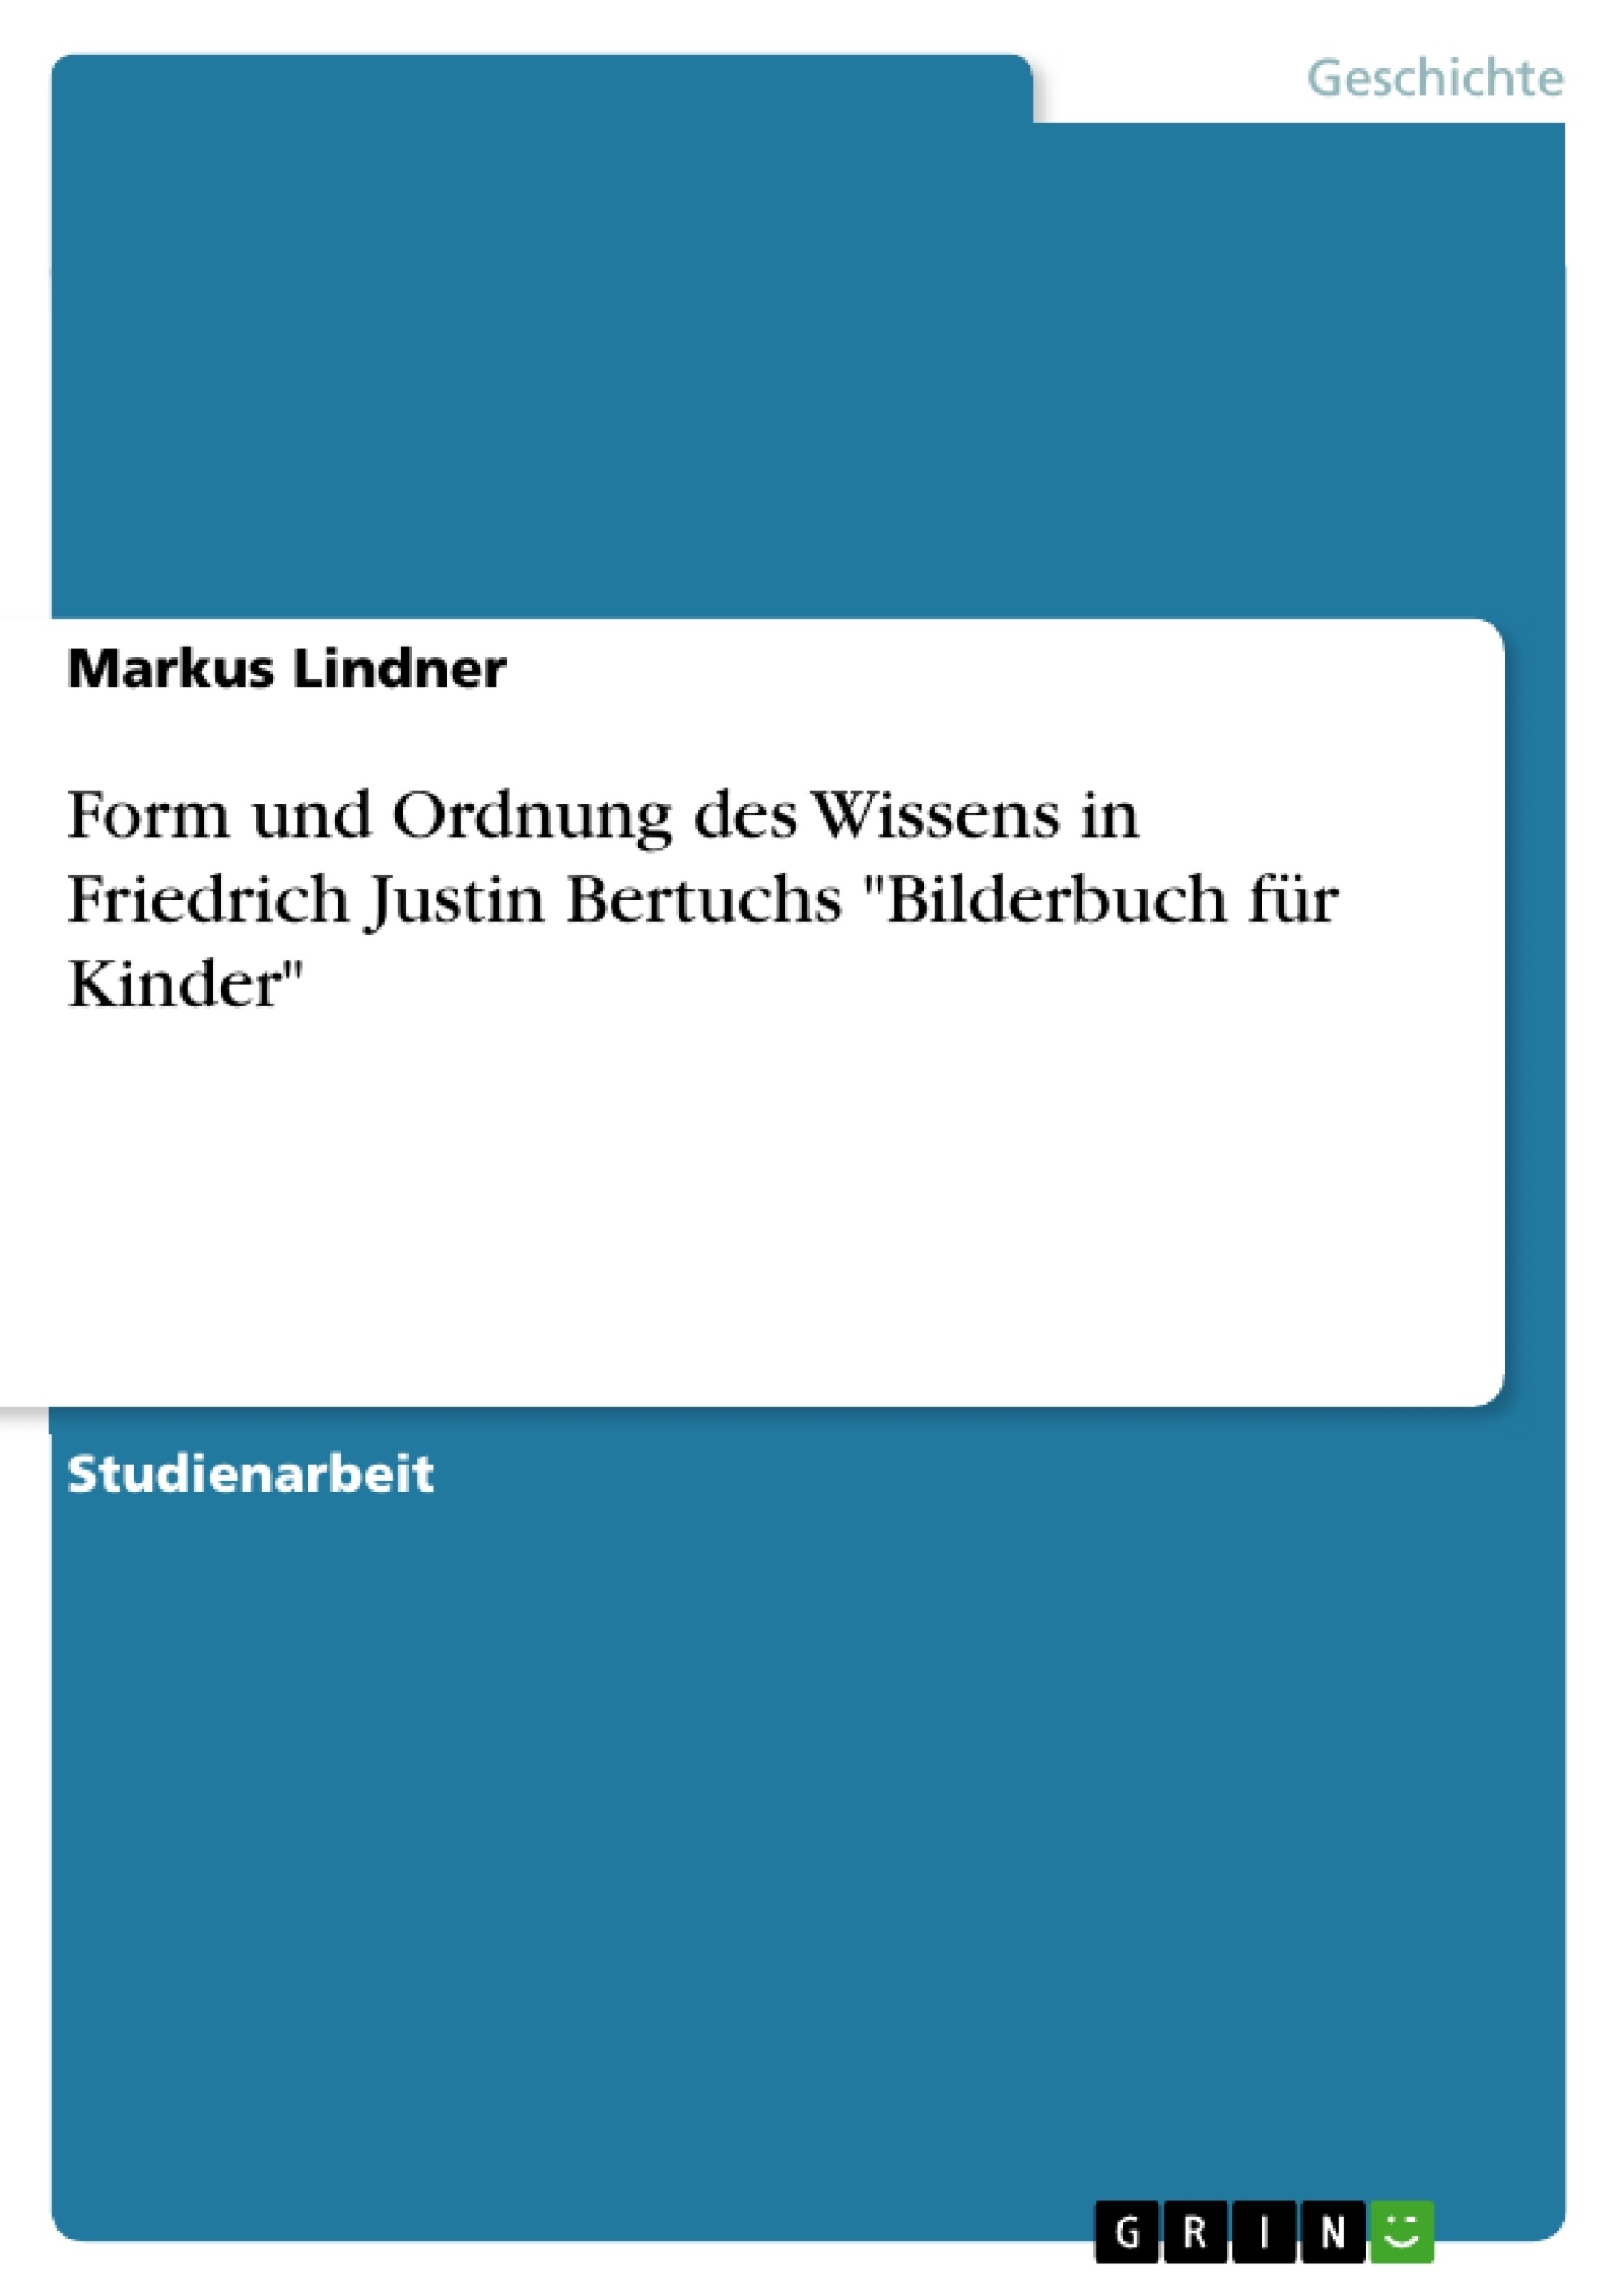 Titre: Form und Ordnung des Wissens in Friedrich Justin Bertuchs "Bilderbuch für Kinder"